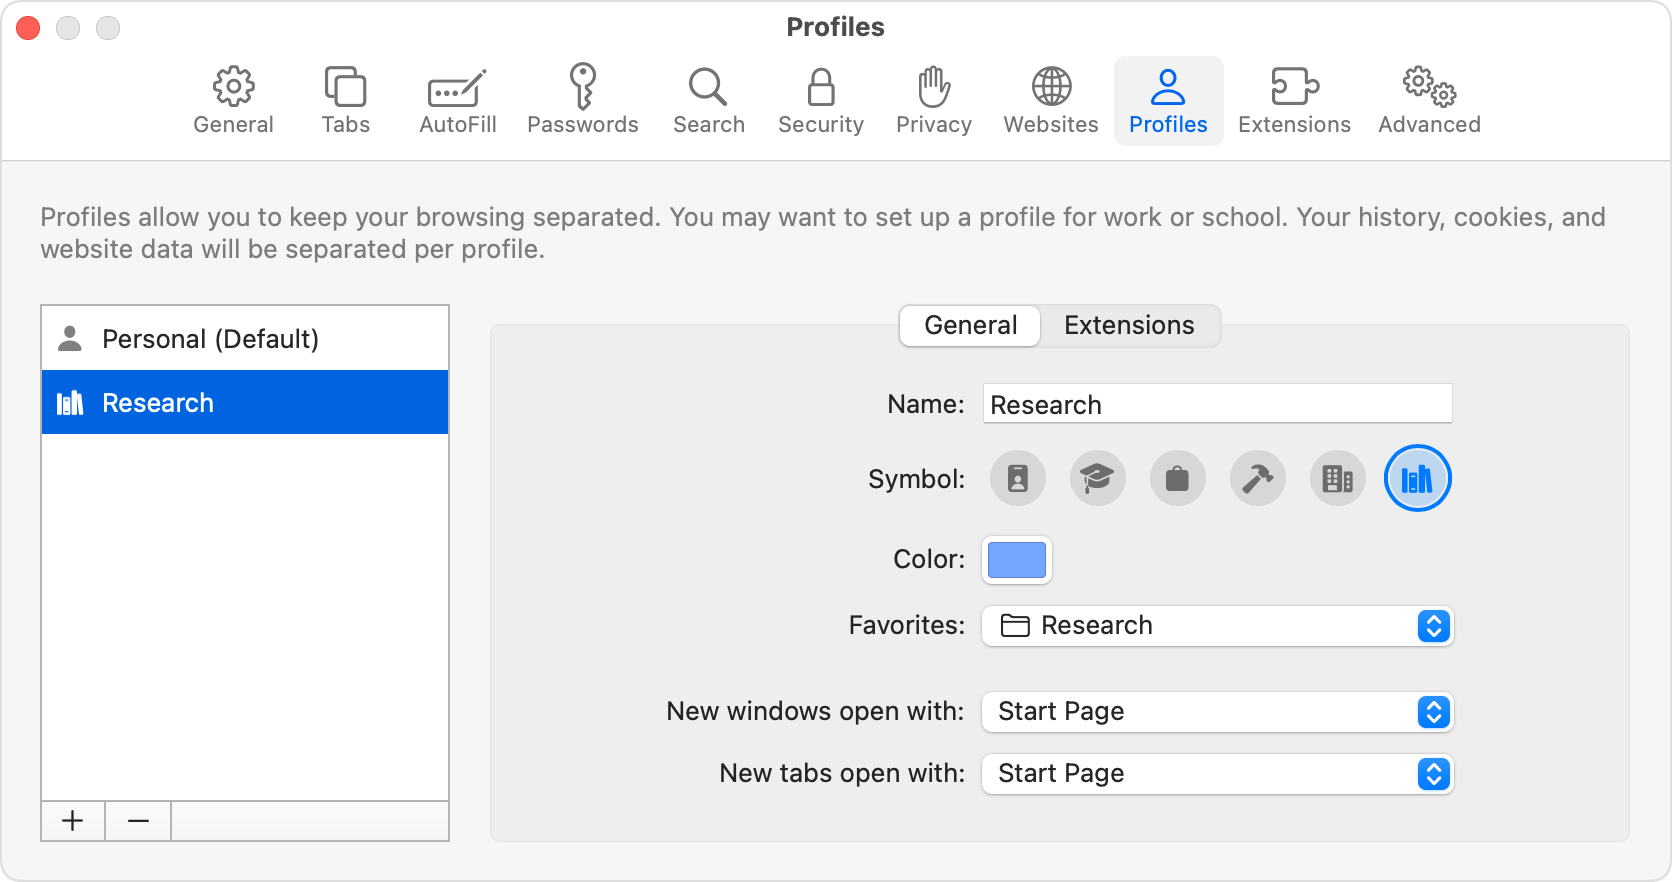 Pannello Profili delle impostazioni di Safari dopo la creazione di un nuovo profilo